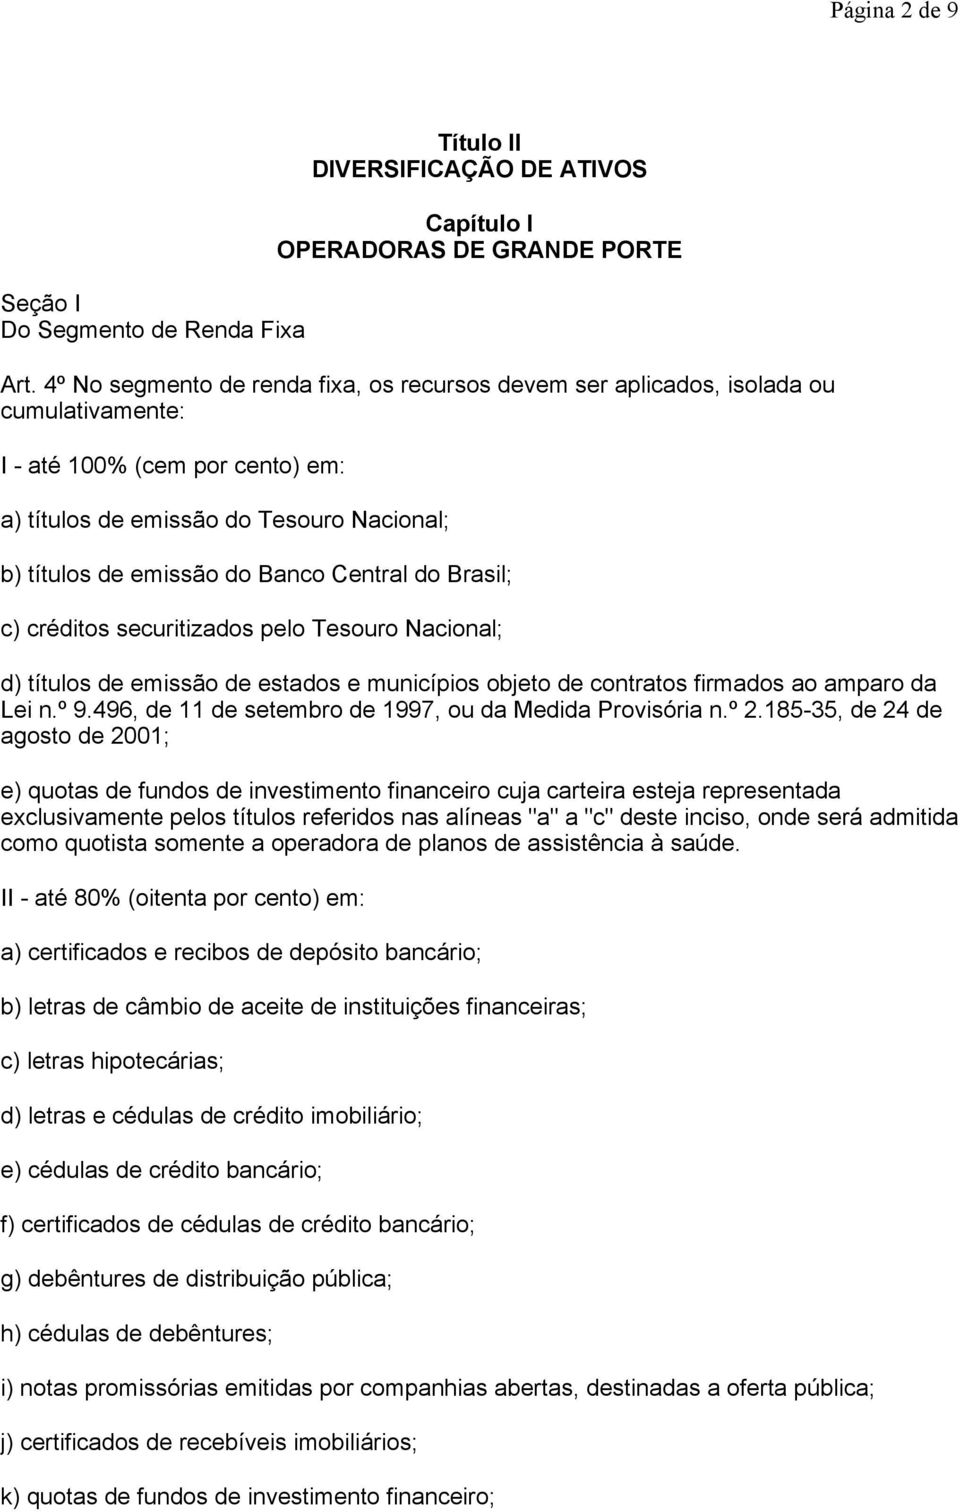 Central do Brasil; c) créditos securitizados pelo Tesouro Nacional; d) títulos de emissão de estados e municípios objeto de contratos firmados ao amparo da Lei n.º 9.